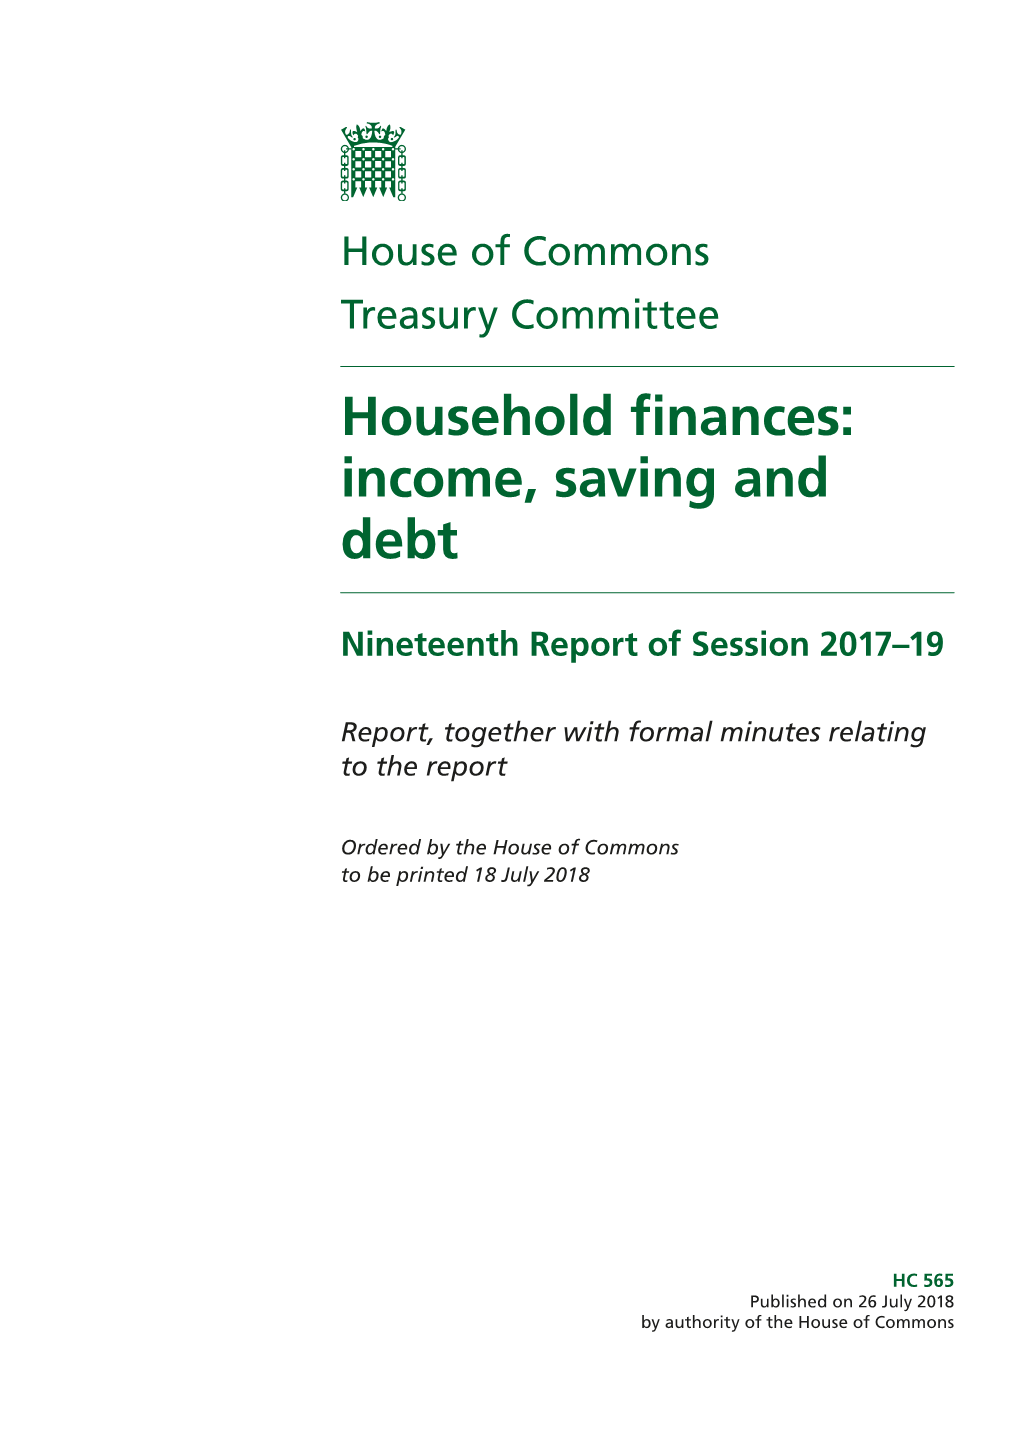 Household Finances: Income, Saving and Debt